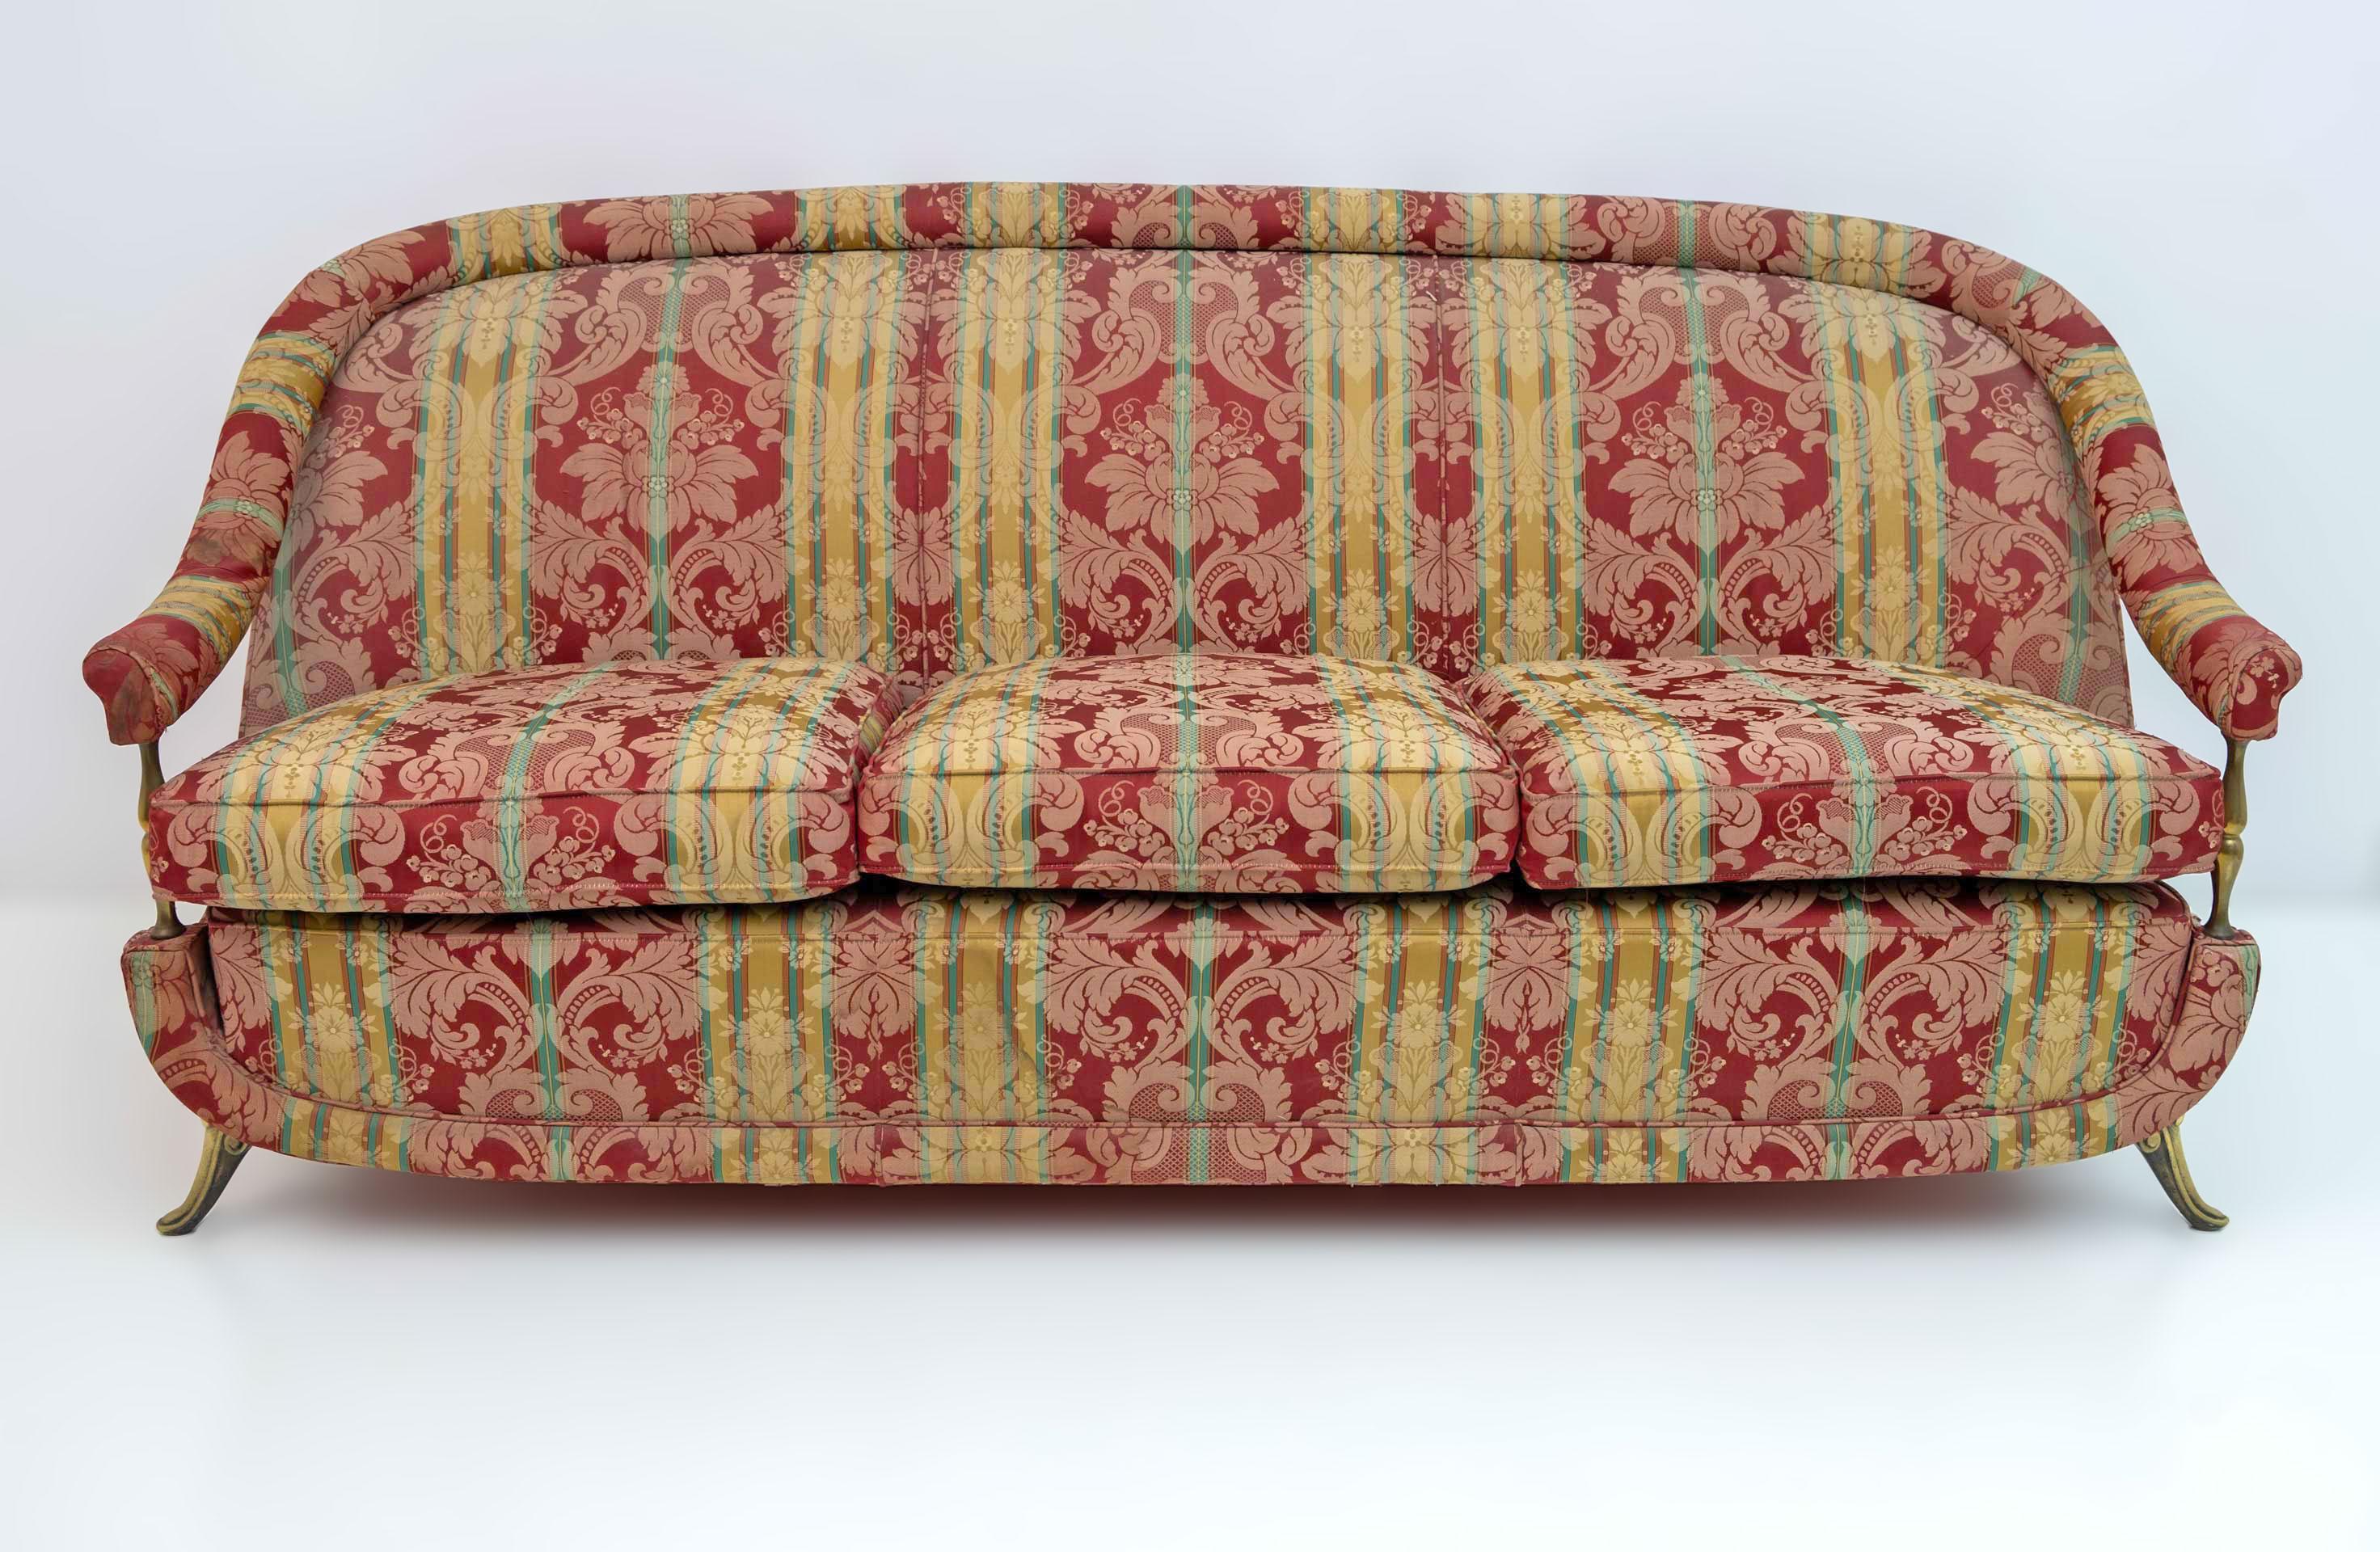 Dreisitzer-Sofa im Art-Déco-Stil, mit Füßen und Säulen zur Unterstützung der Armlehnen, aus Messing. Die Polsterung wurde vor zwanzig Jahren erneuert, ist aber abgenutzt und fleckig, eine neue Polsterung wird empfohlen. Französische Produktion aus